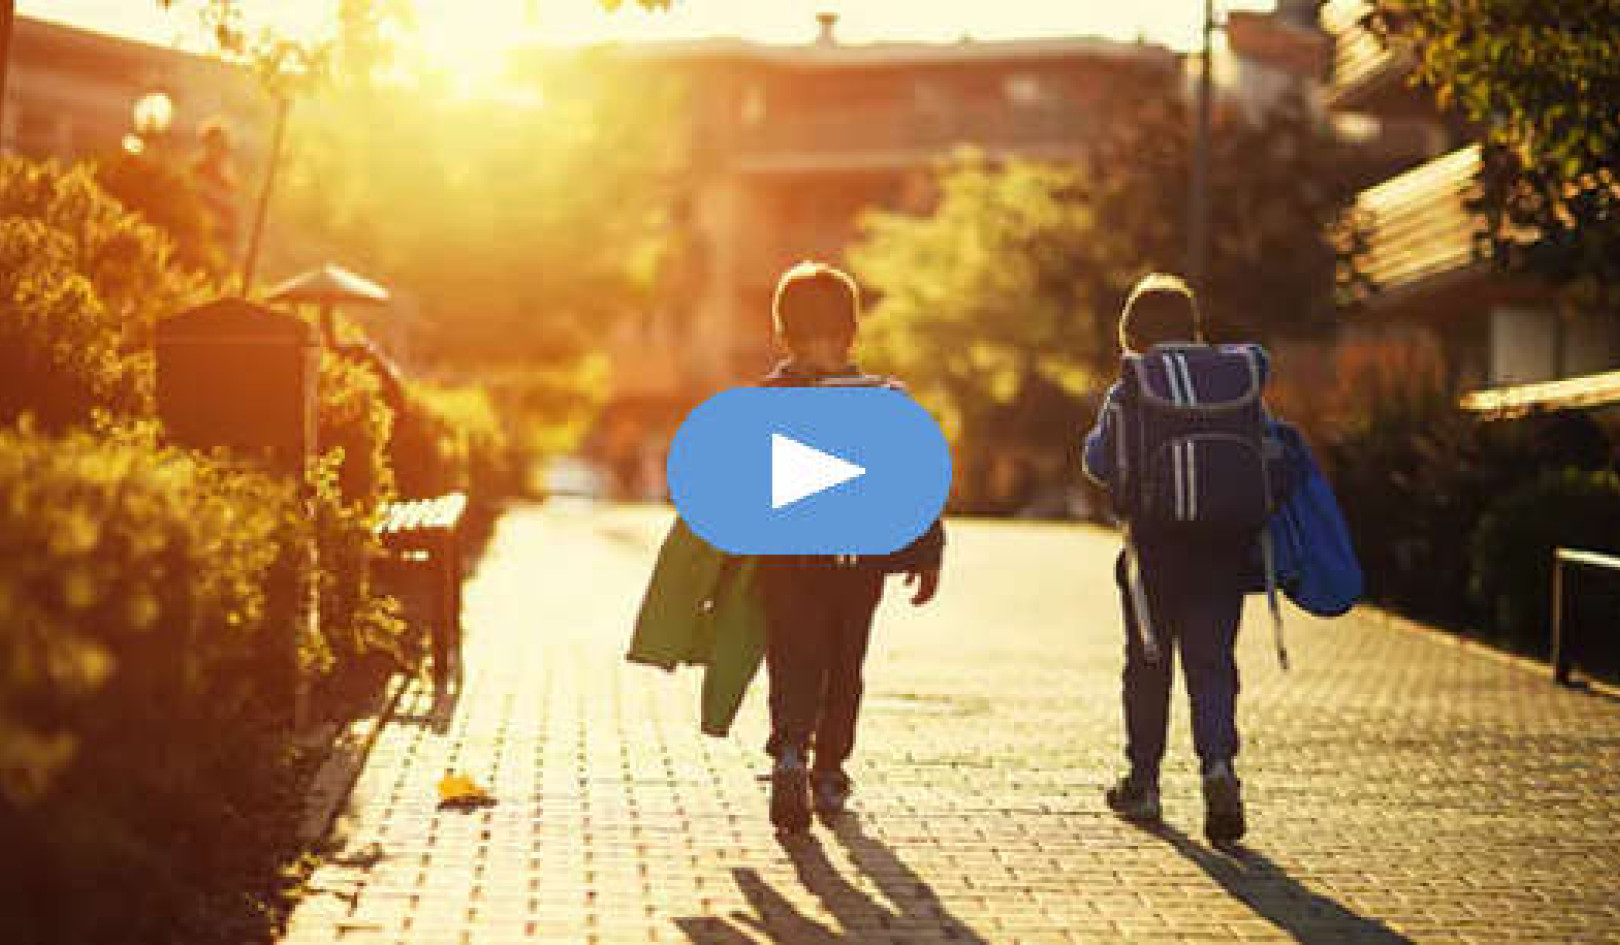 เด็ก ๆ อิสระที่จะเดินเตร่ด้วยตัวเองรู้สึกมั่นใจมากขึ้นในวัยผู้ใหญ่หรือไม่? (วิดีโอ)